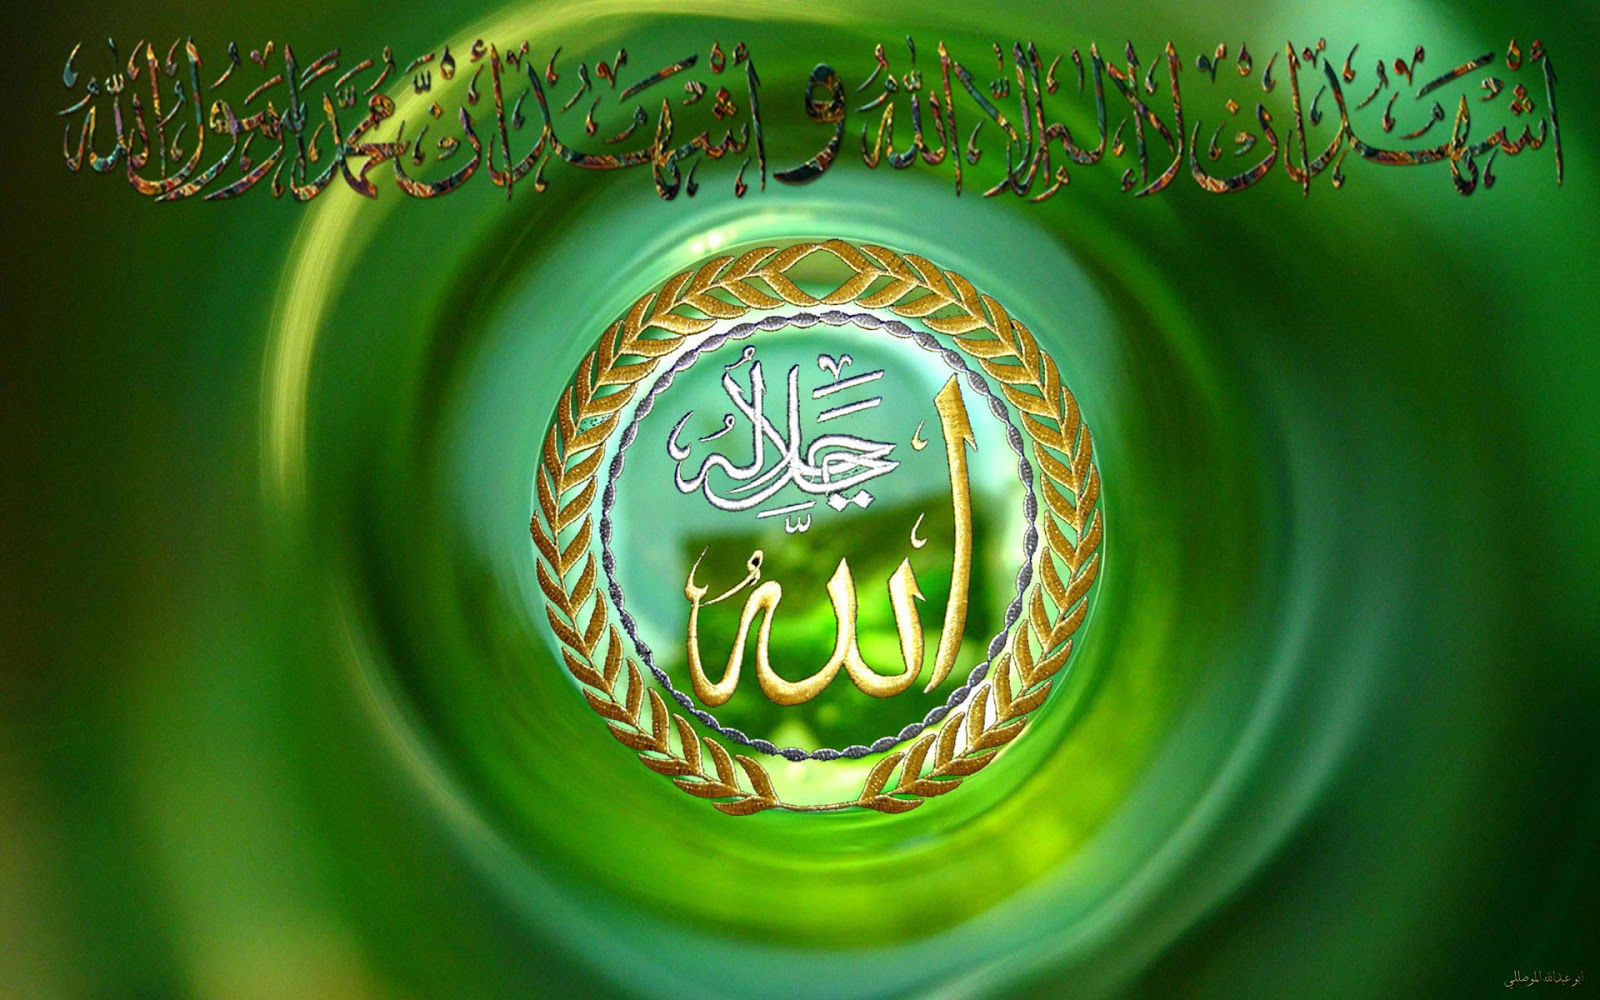  50 Beautiful Islamic  HD Wallpapers  on WallpaperSafari